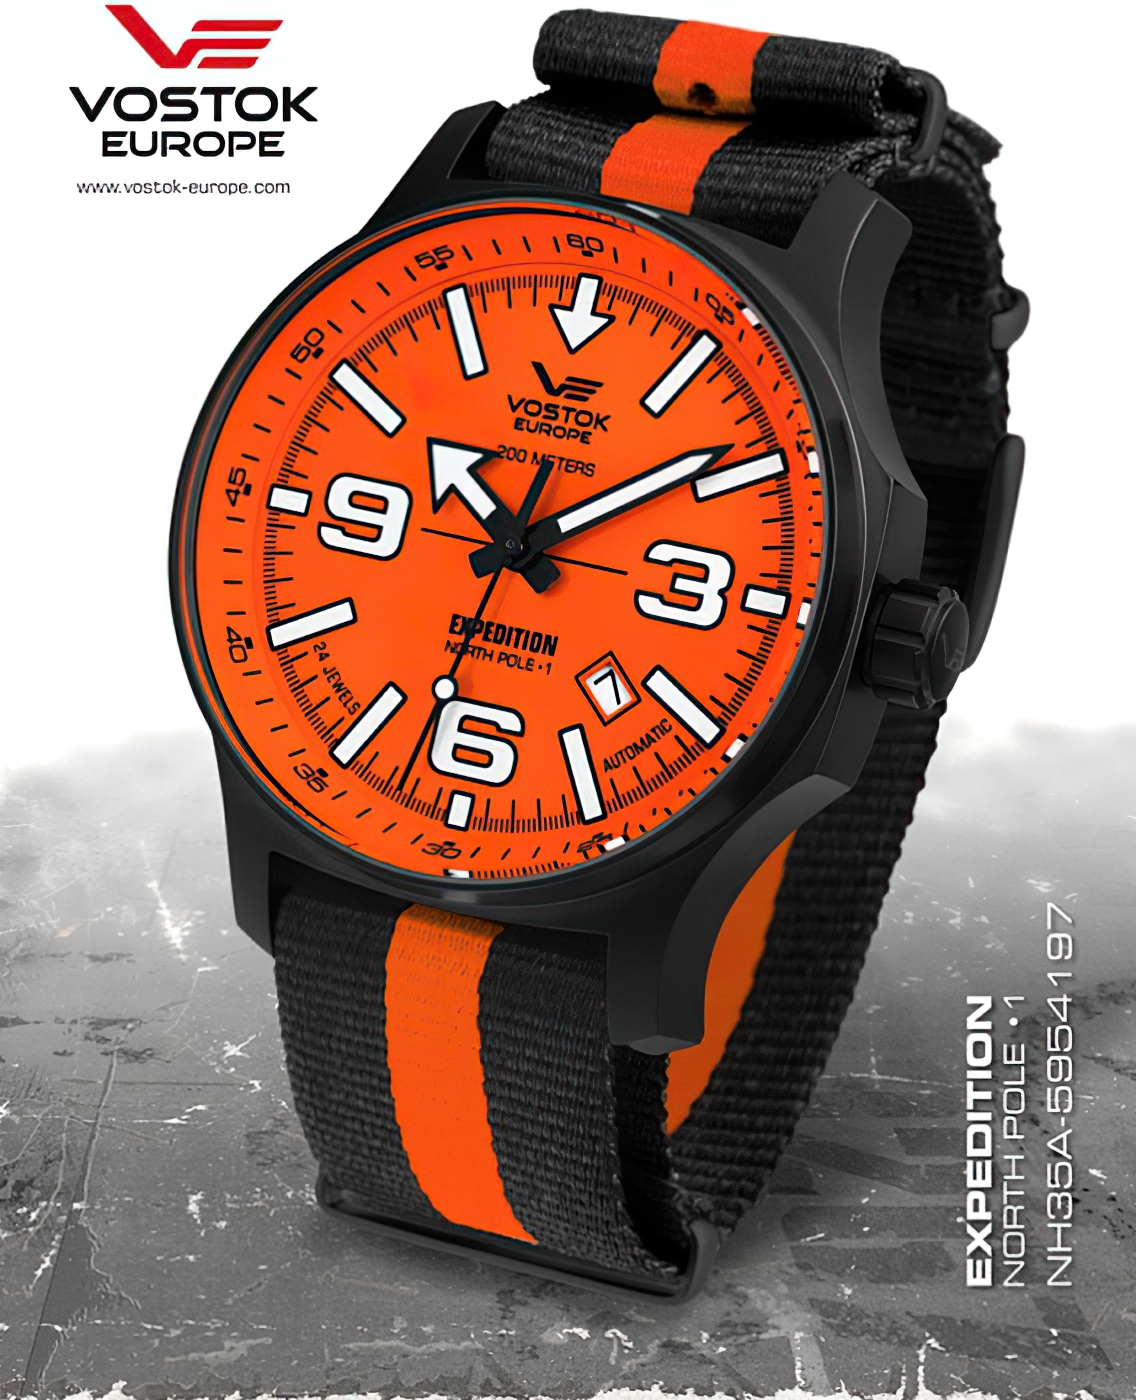  Vostok Europe Expedition Nordpol 1 Automatik black-orange 